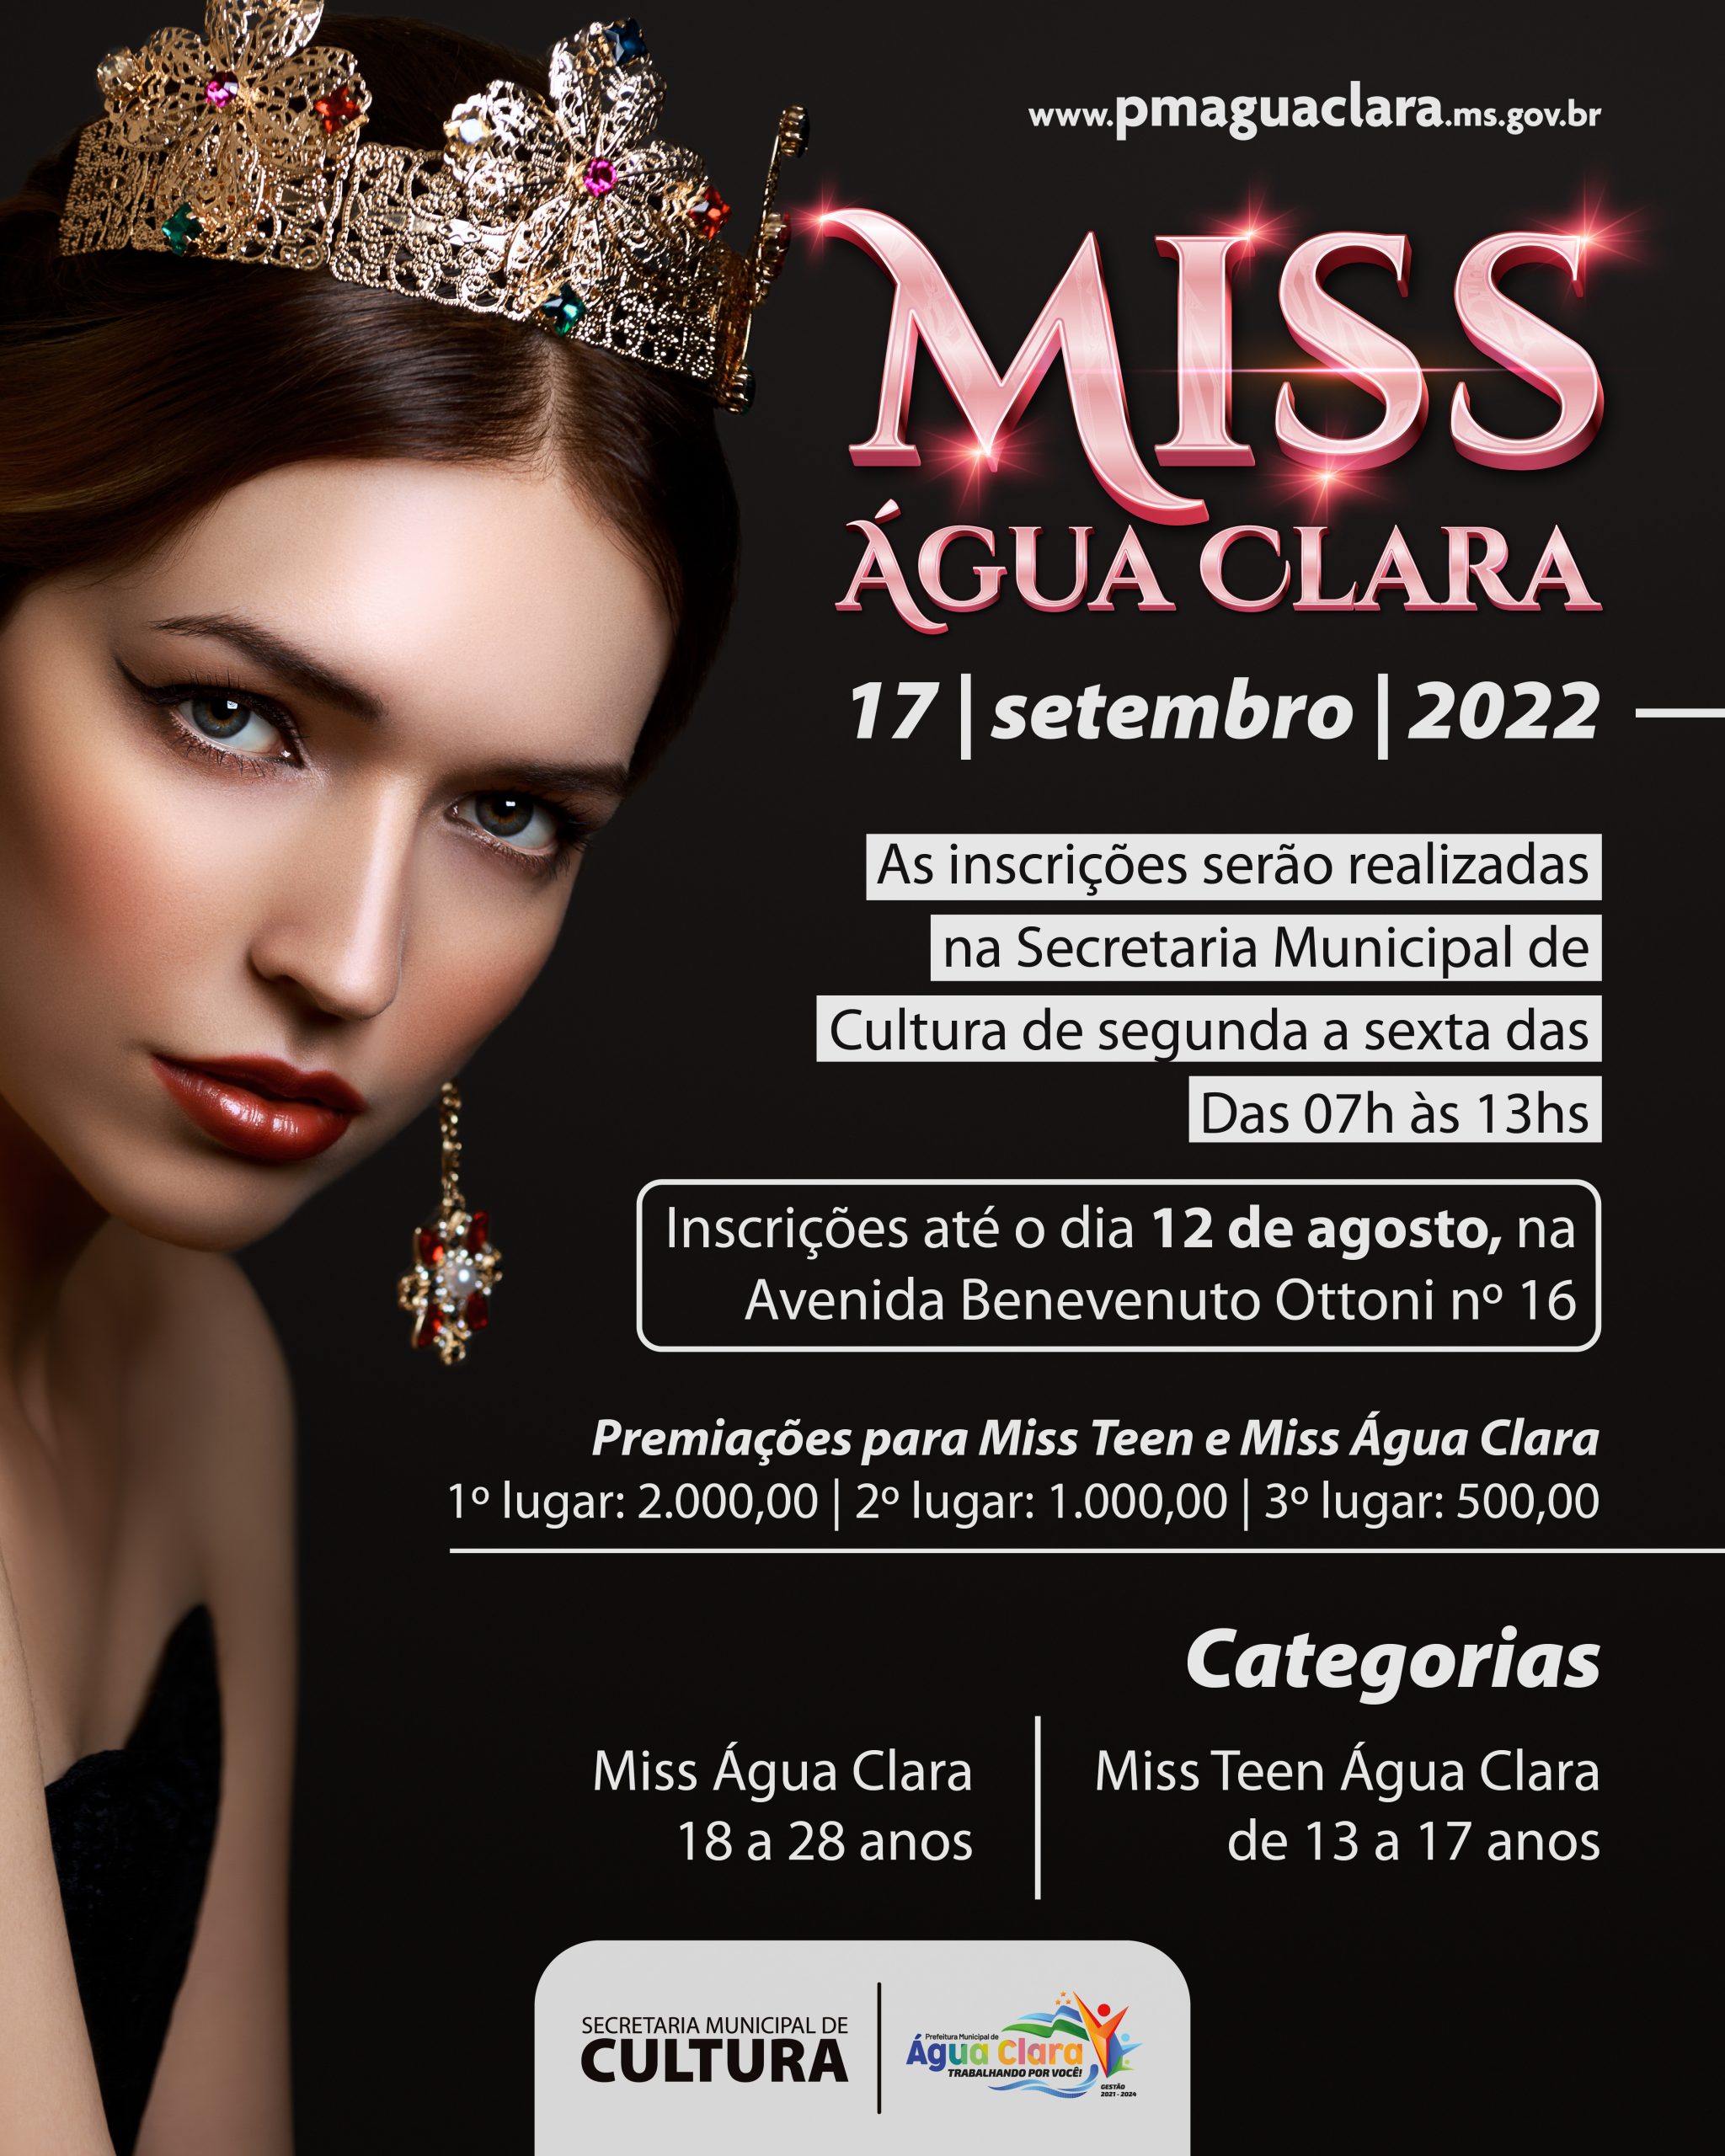 ATENÇÃO! As inscrições para o concurso Miss Água Clara foram prorrogadas